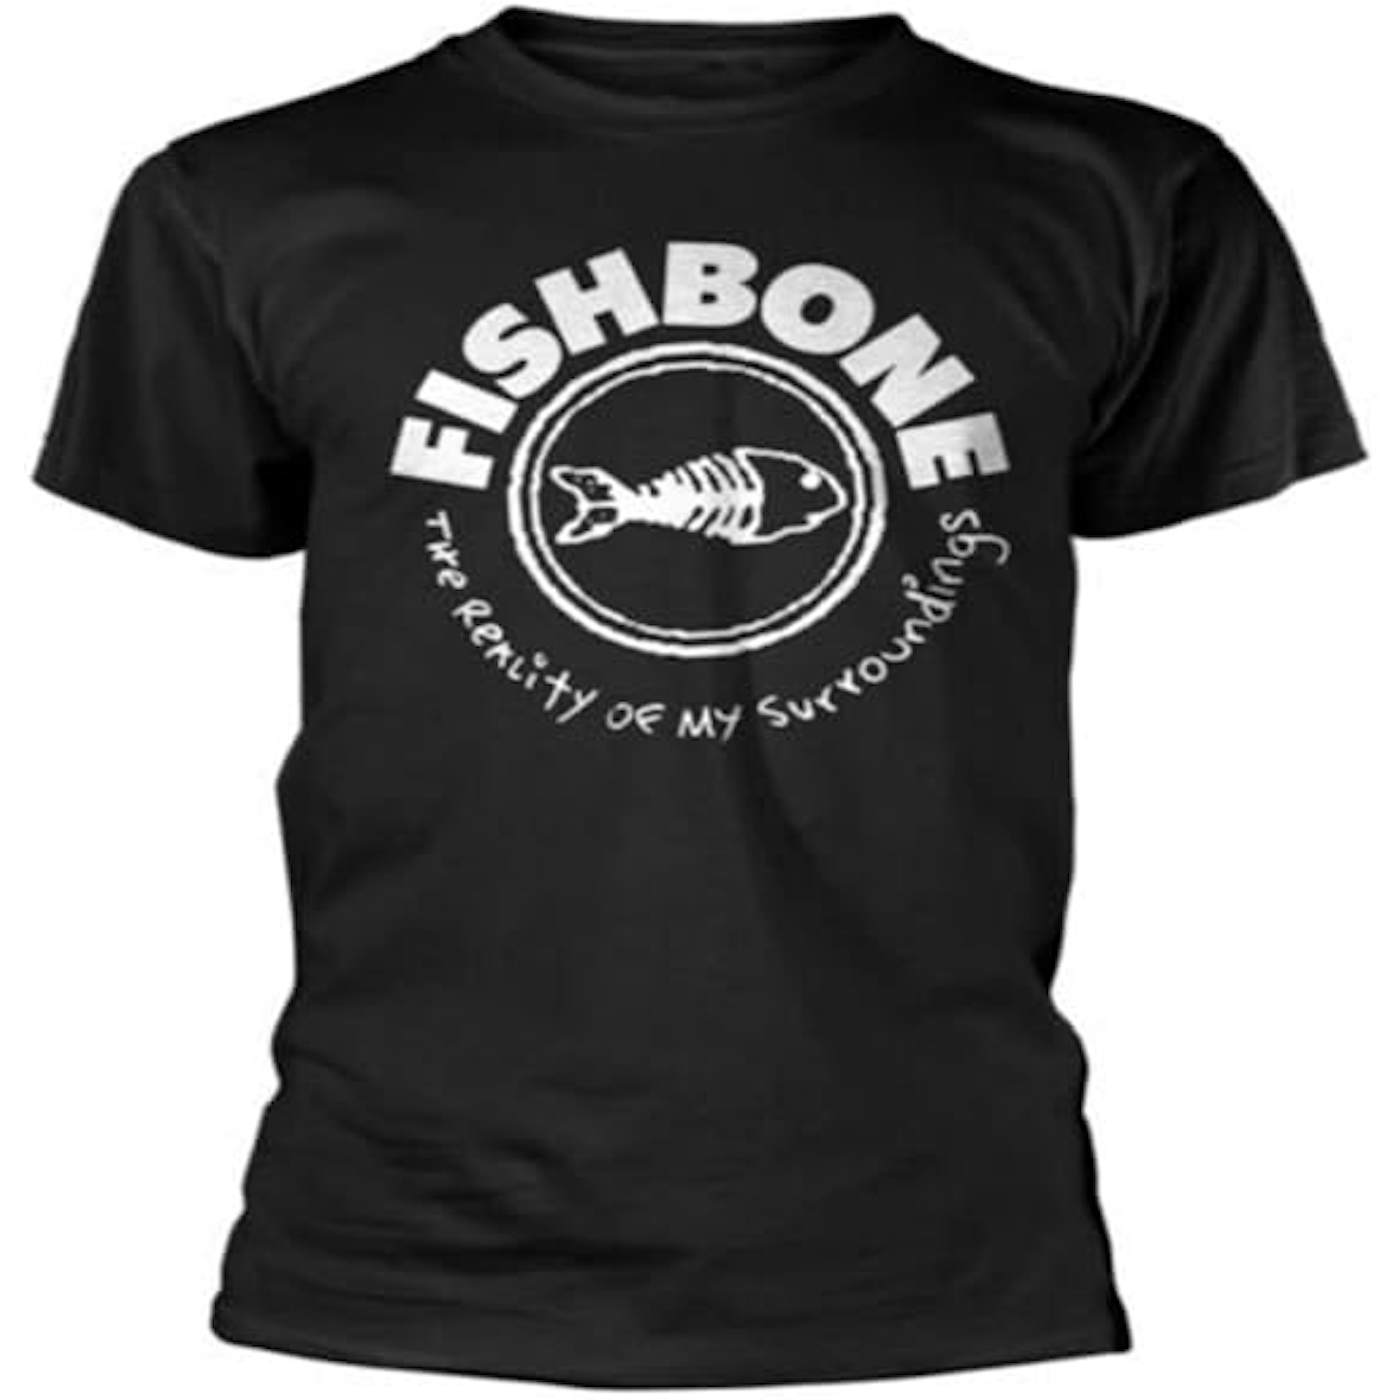 Fishbone T Shirt - The Reality Of My Surroundings